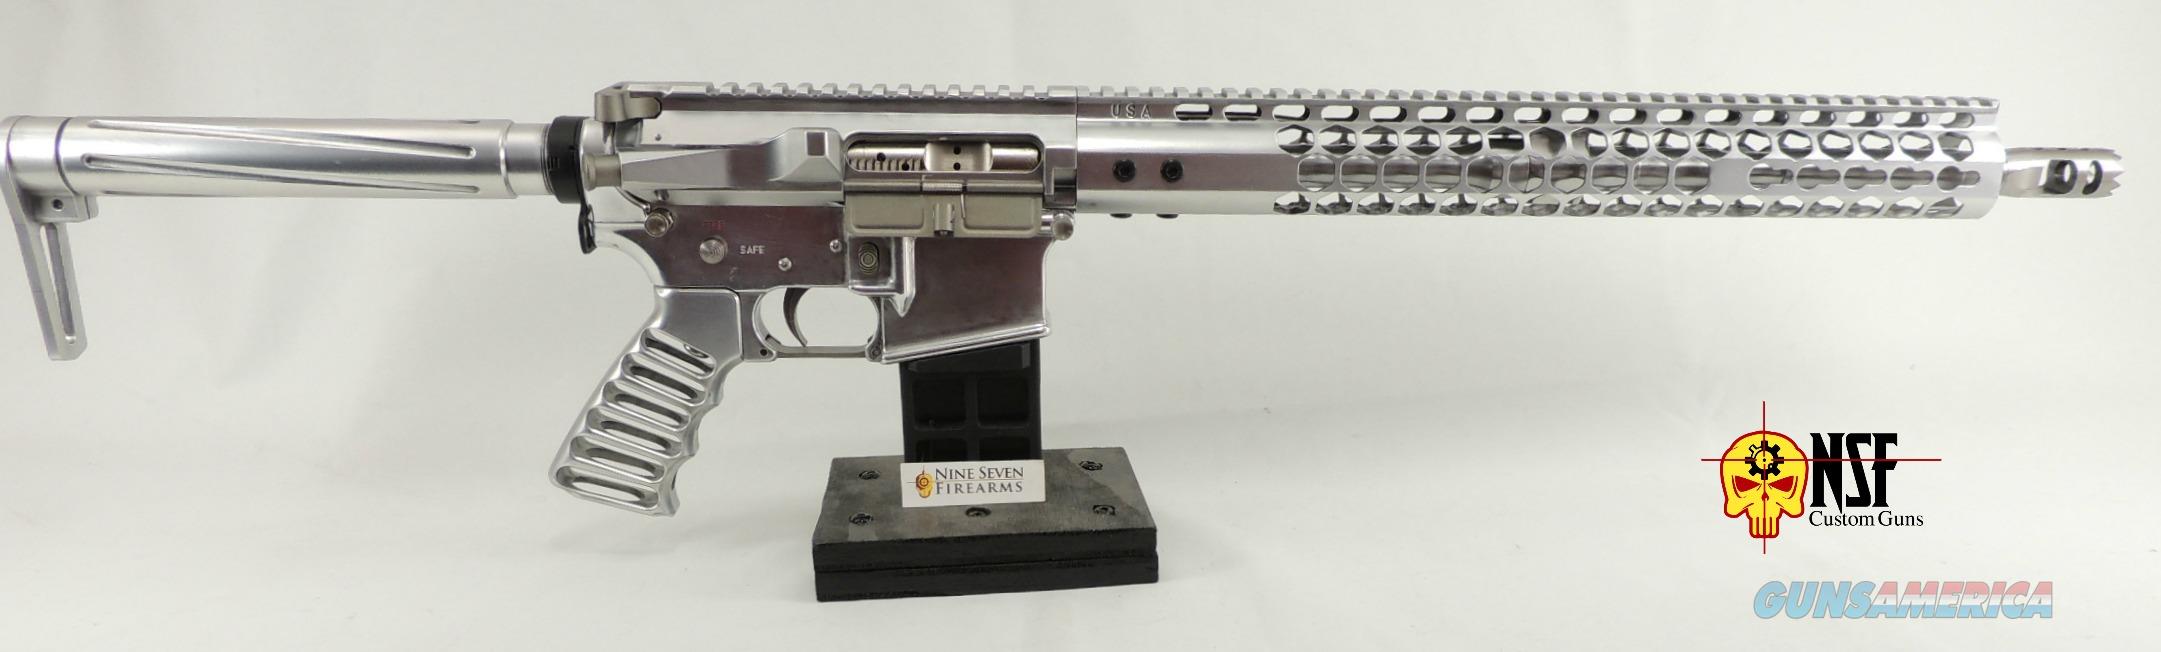 NSF Custom Guns SS-15 Polished Aluminum AR-15 for sale